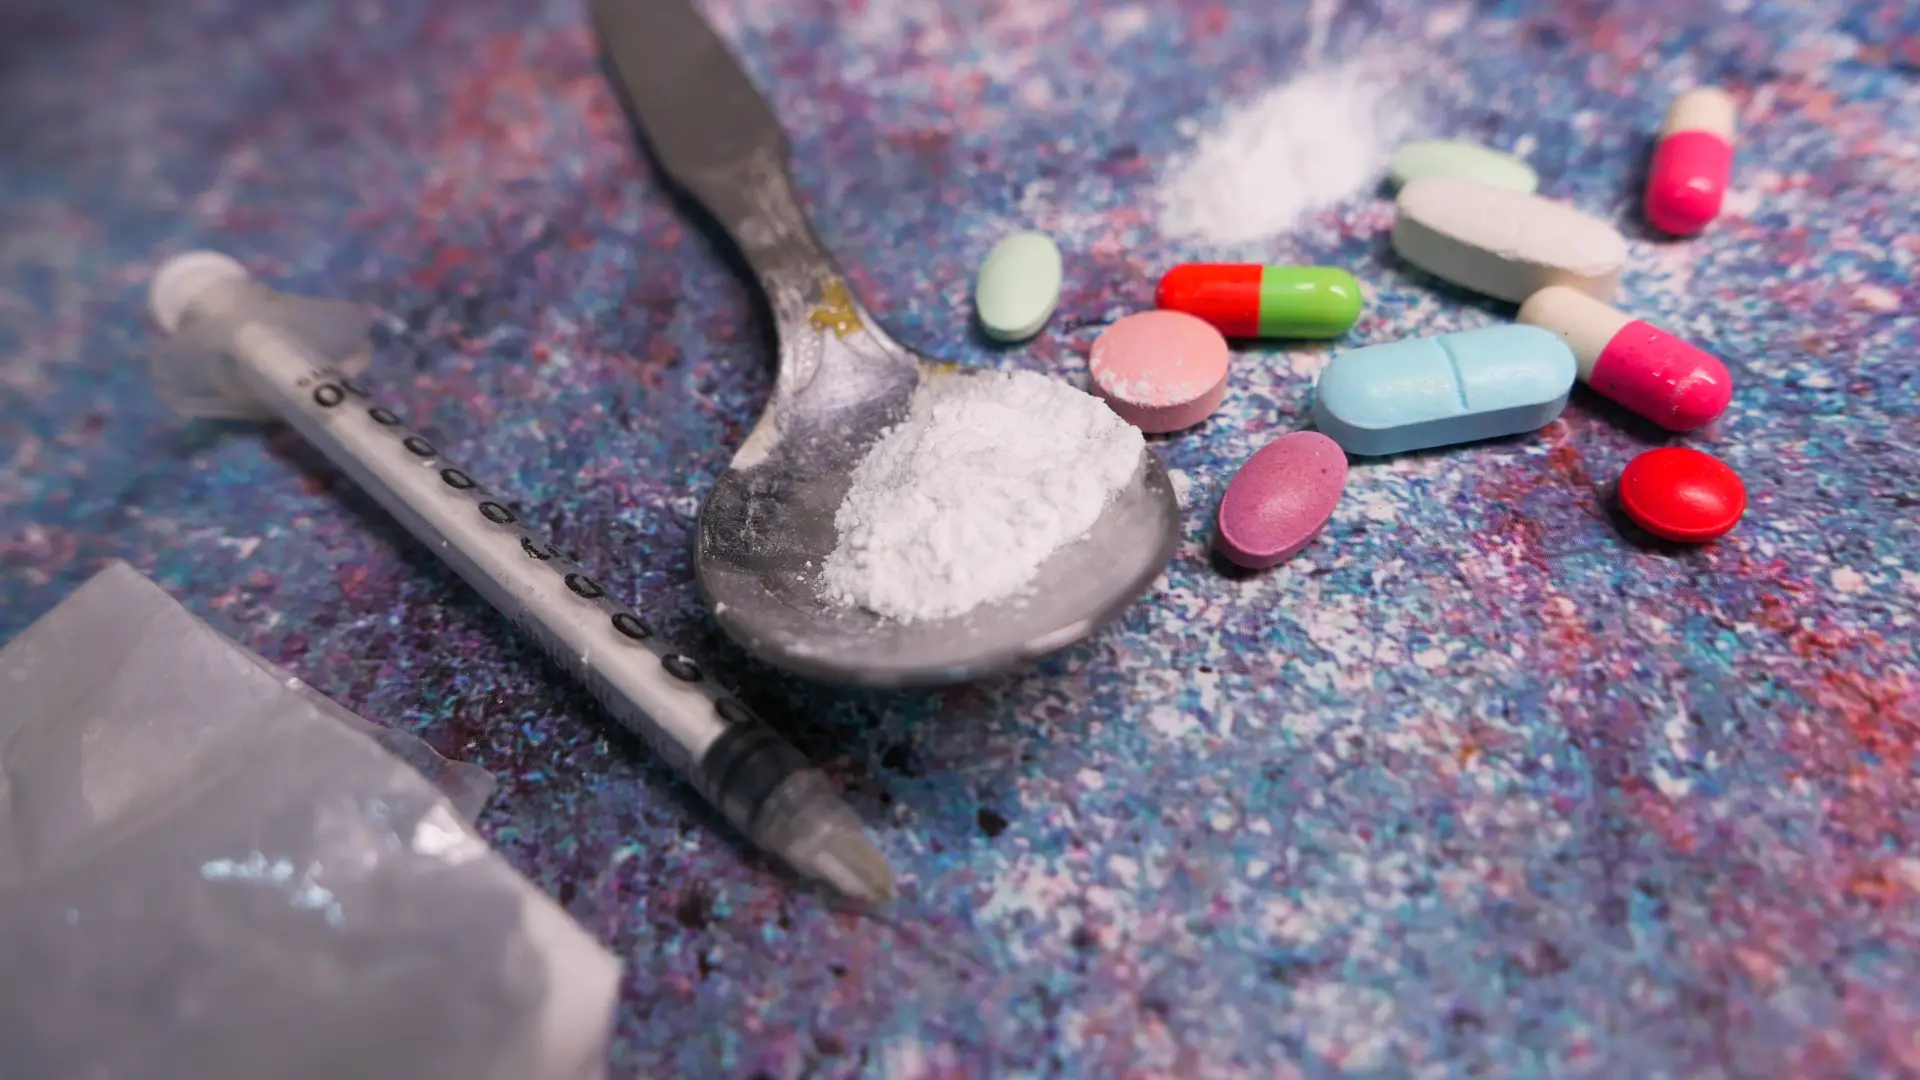 Mortes por overdose aumentam 45% em 2021